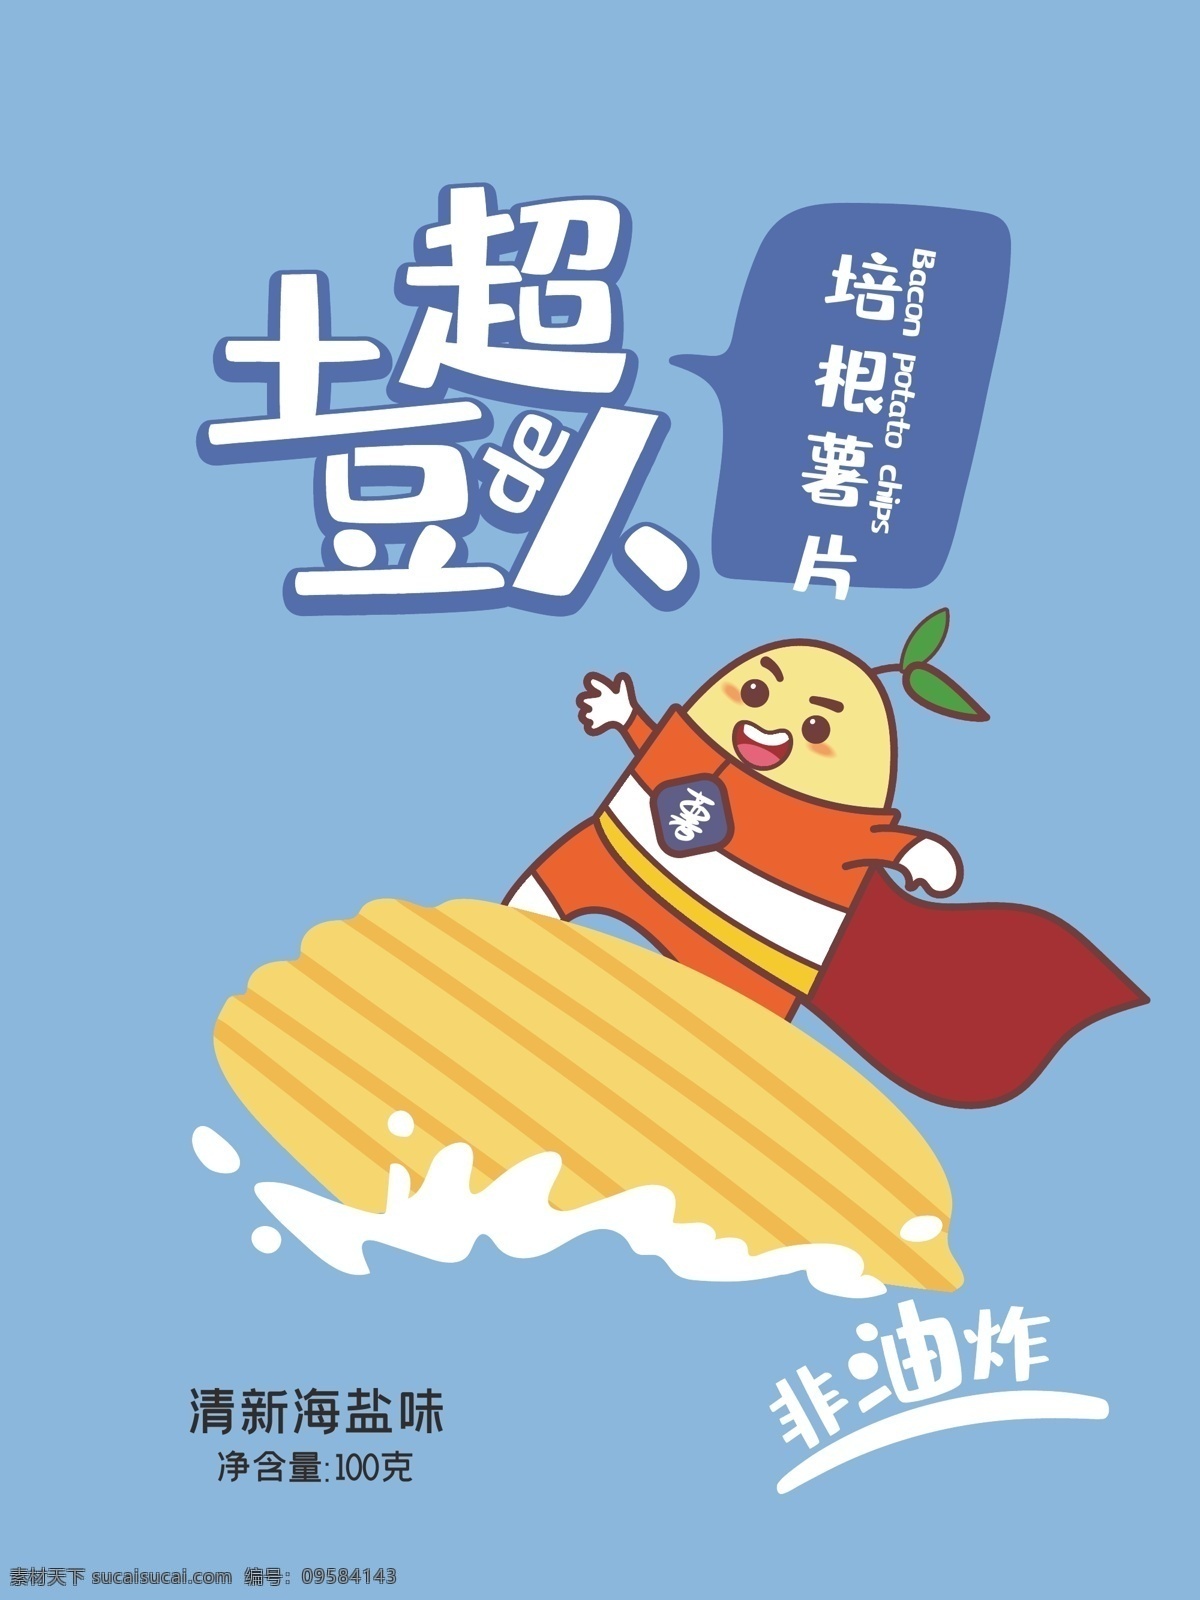 薯片 海盐 味 袋装 包装 薯片包装 土豆 卡通包装 插画包装 冲浪 帆船 超人 矢量